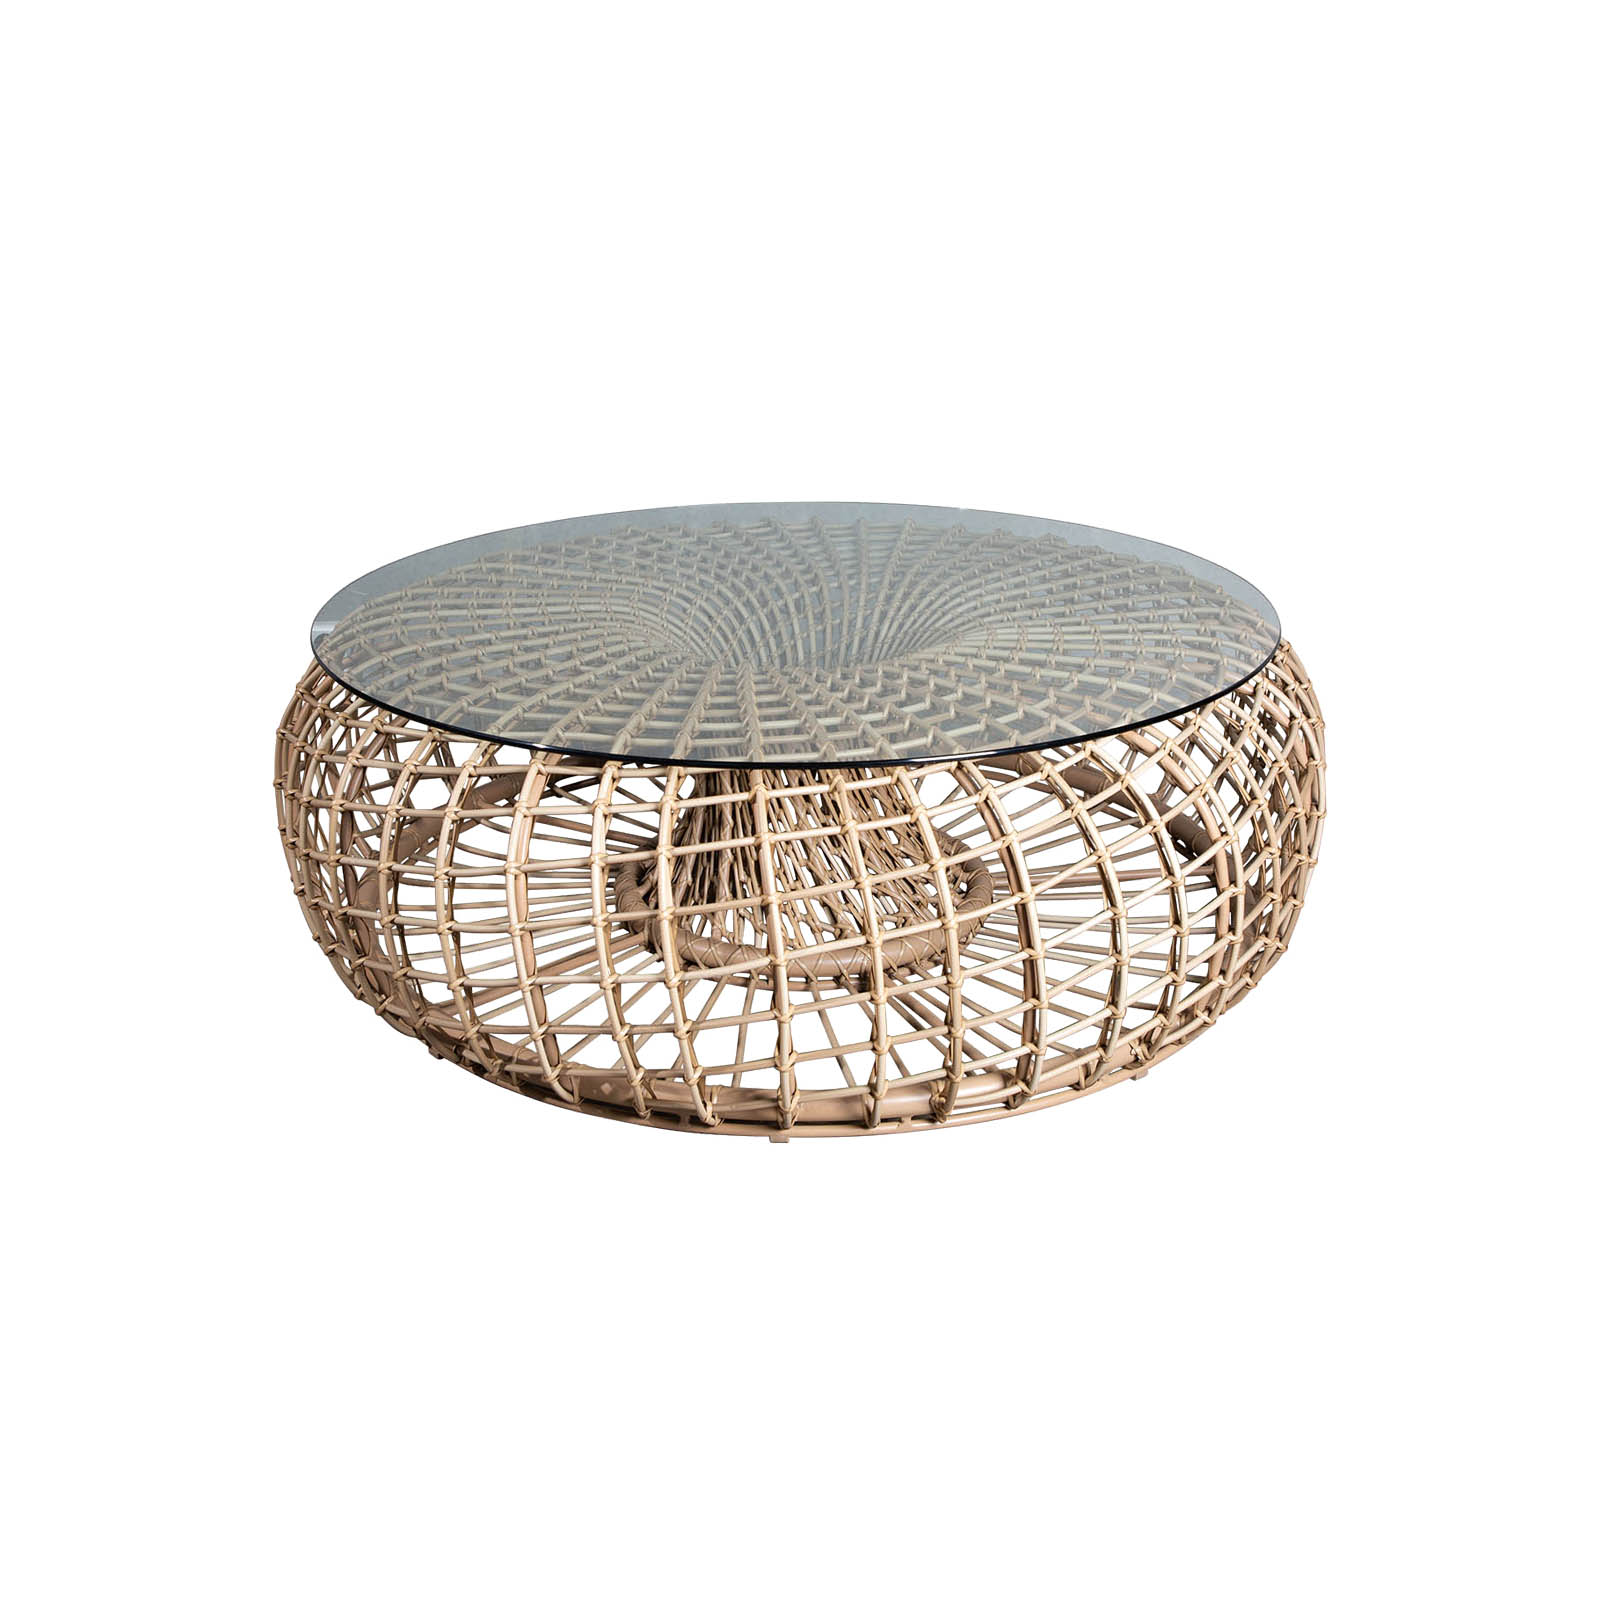 Nest Couchtisch oder Hocker groß Durchmesser 130 cm aus Cane-line Weave in Natural mit Tischplatte aus Sicherheitsglas in Clear